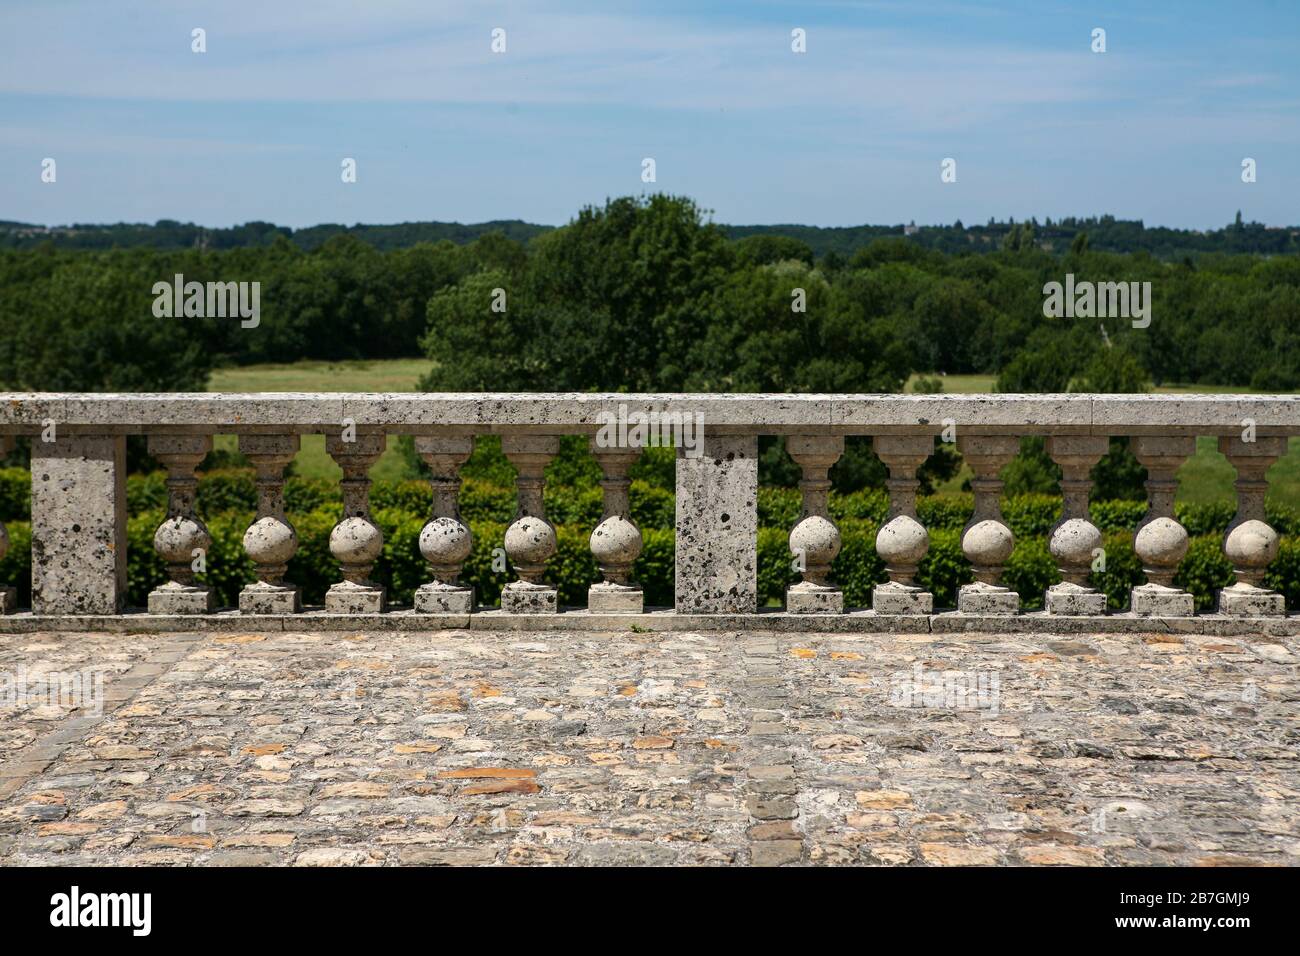 Balustrade en pierre extérieure française antique avec vue panoramique, pavés en pierre devant, Château de Villandry, France Banque D'Images